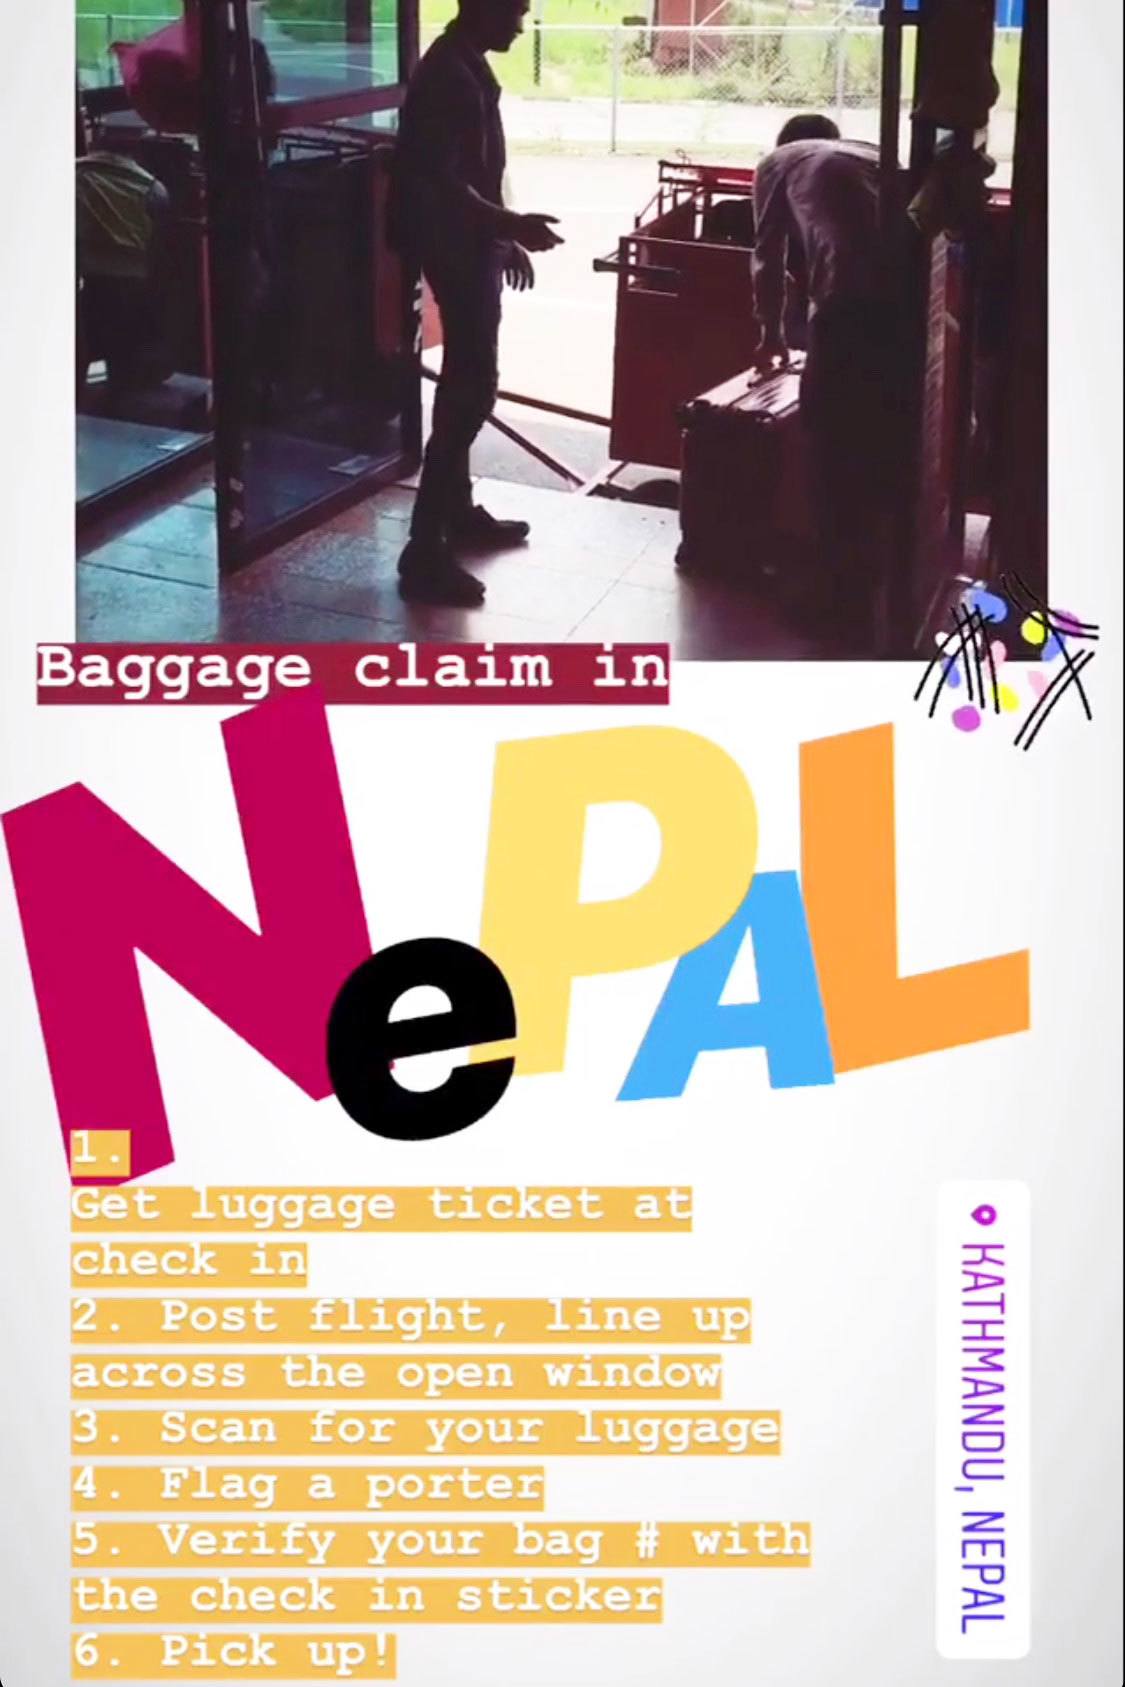 nepal-airport